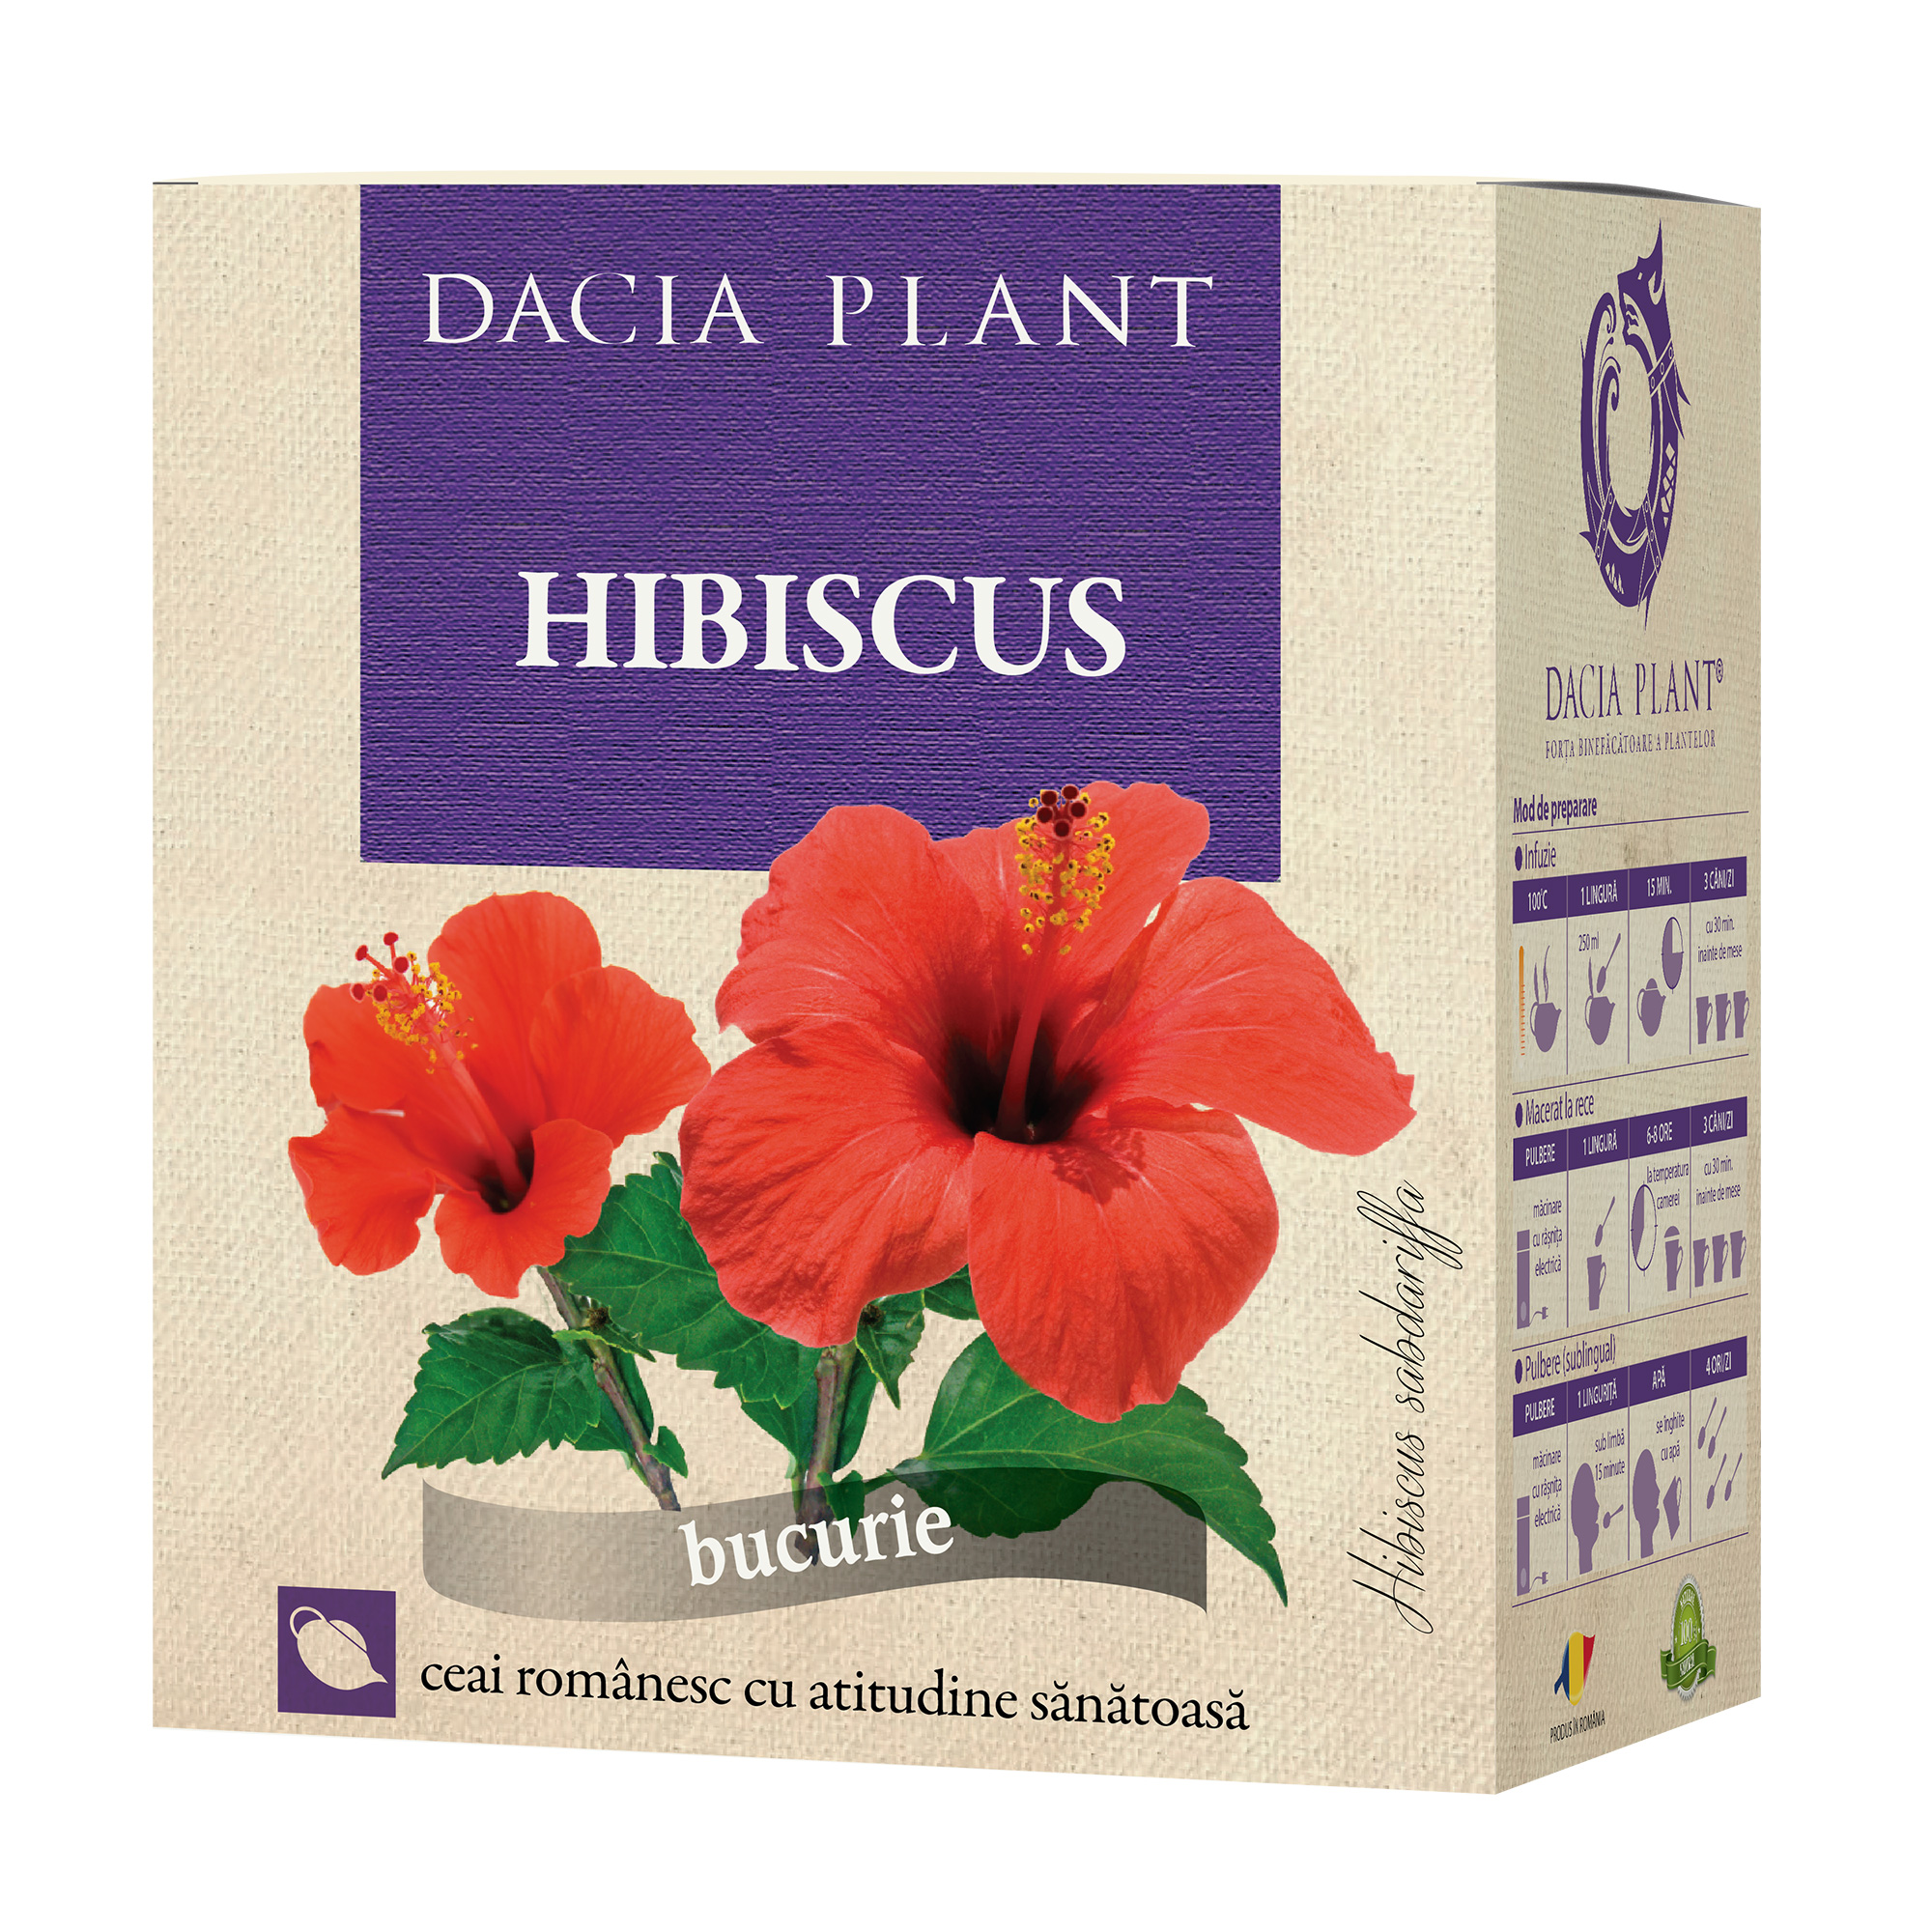 Ceai de Hibiscus - Preparare, Beneficii si Contraindicatii